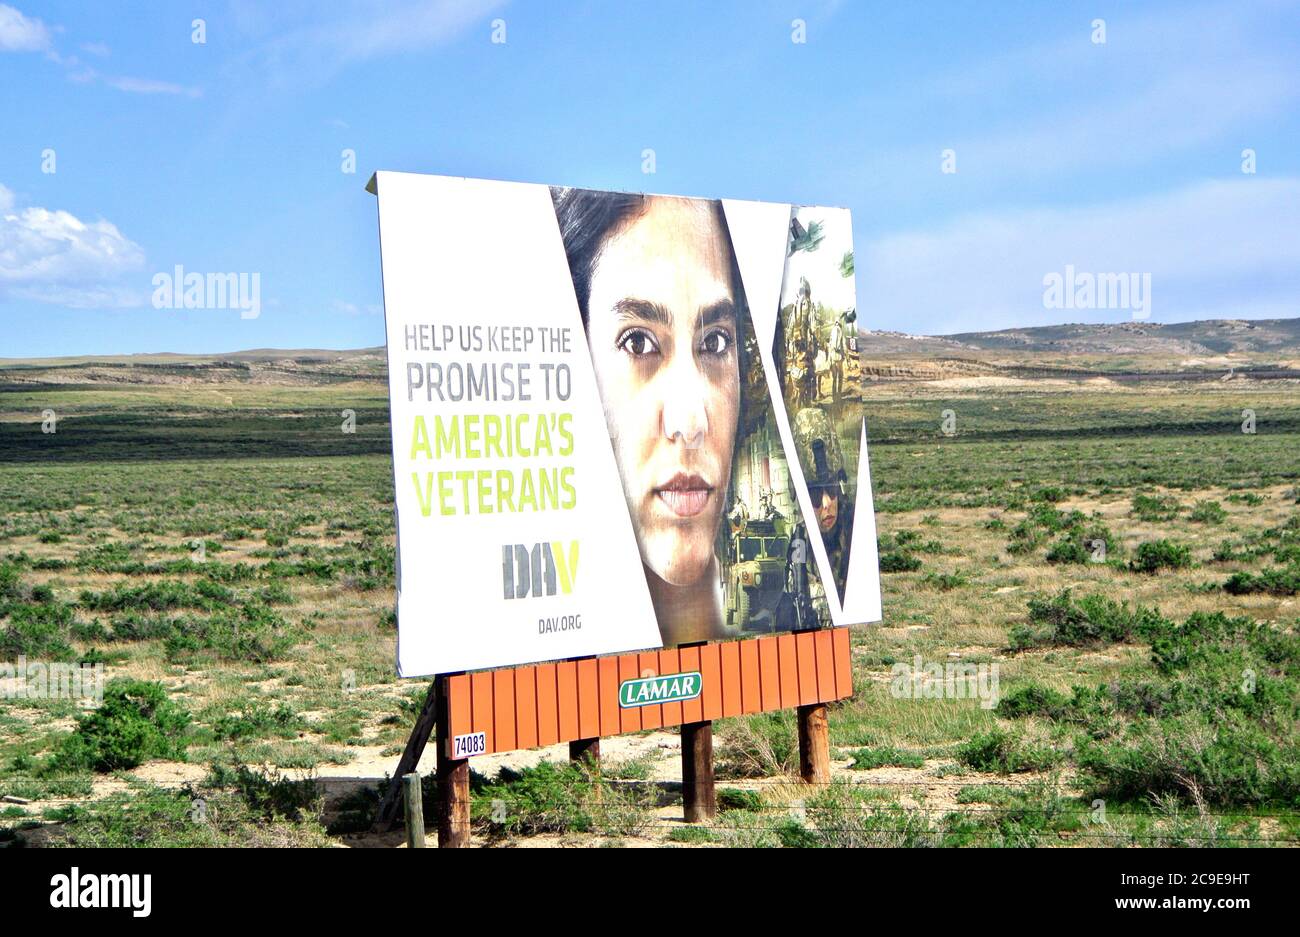 dans la campagne de l'iowa, panneaux d'affichage demandent à l'américain de garder leur promesse aux anciens combattants américains Banque D'Images